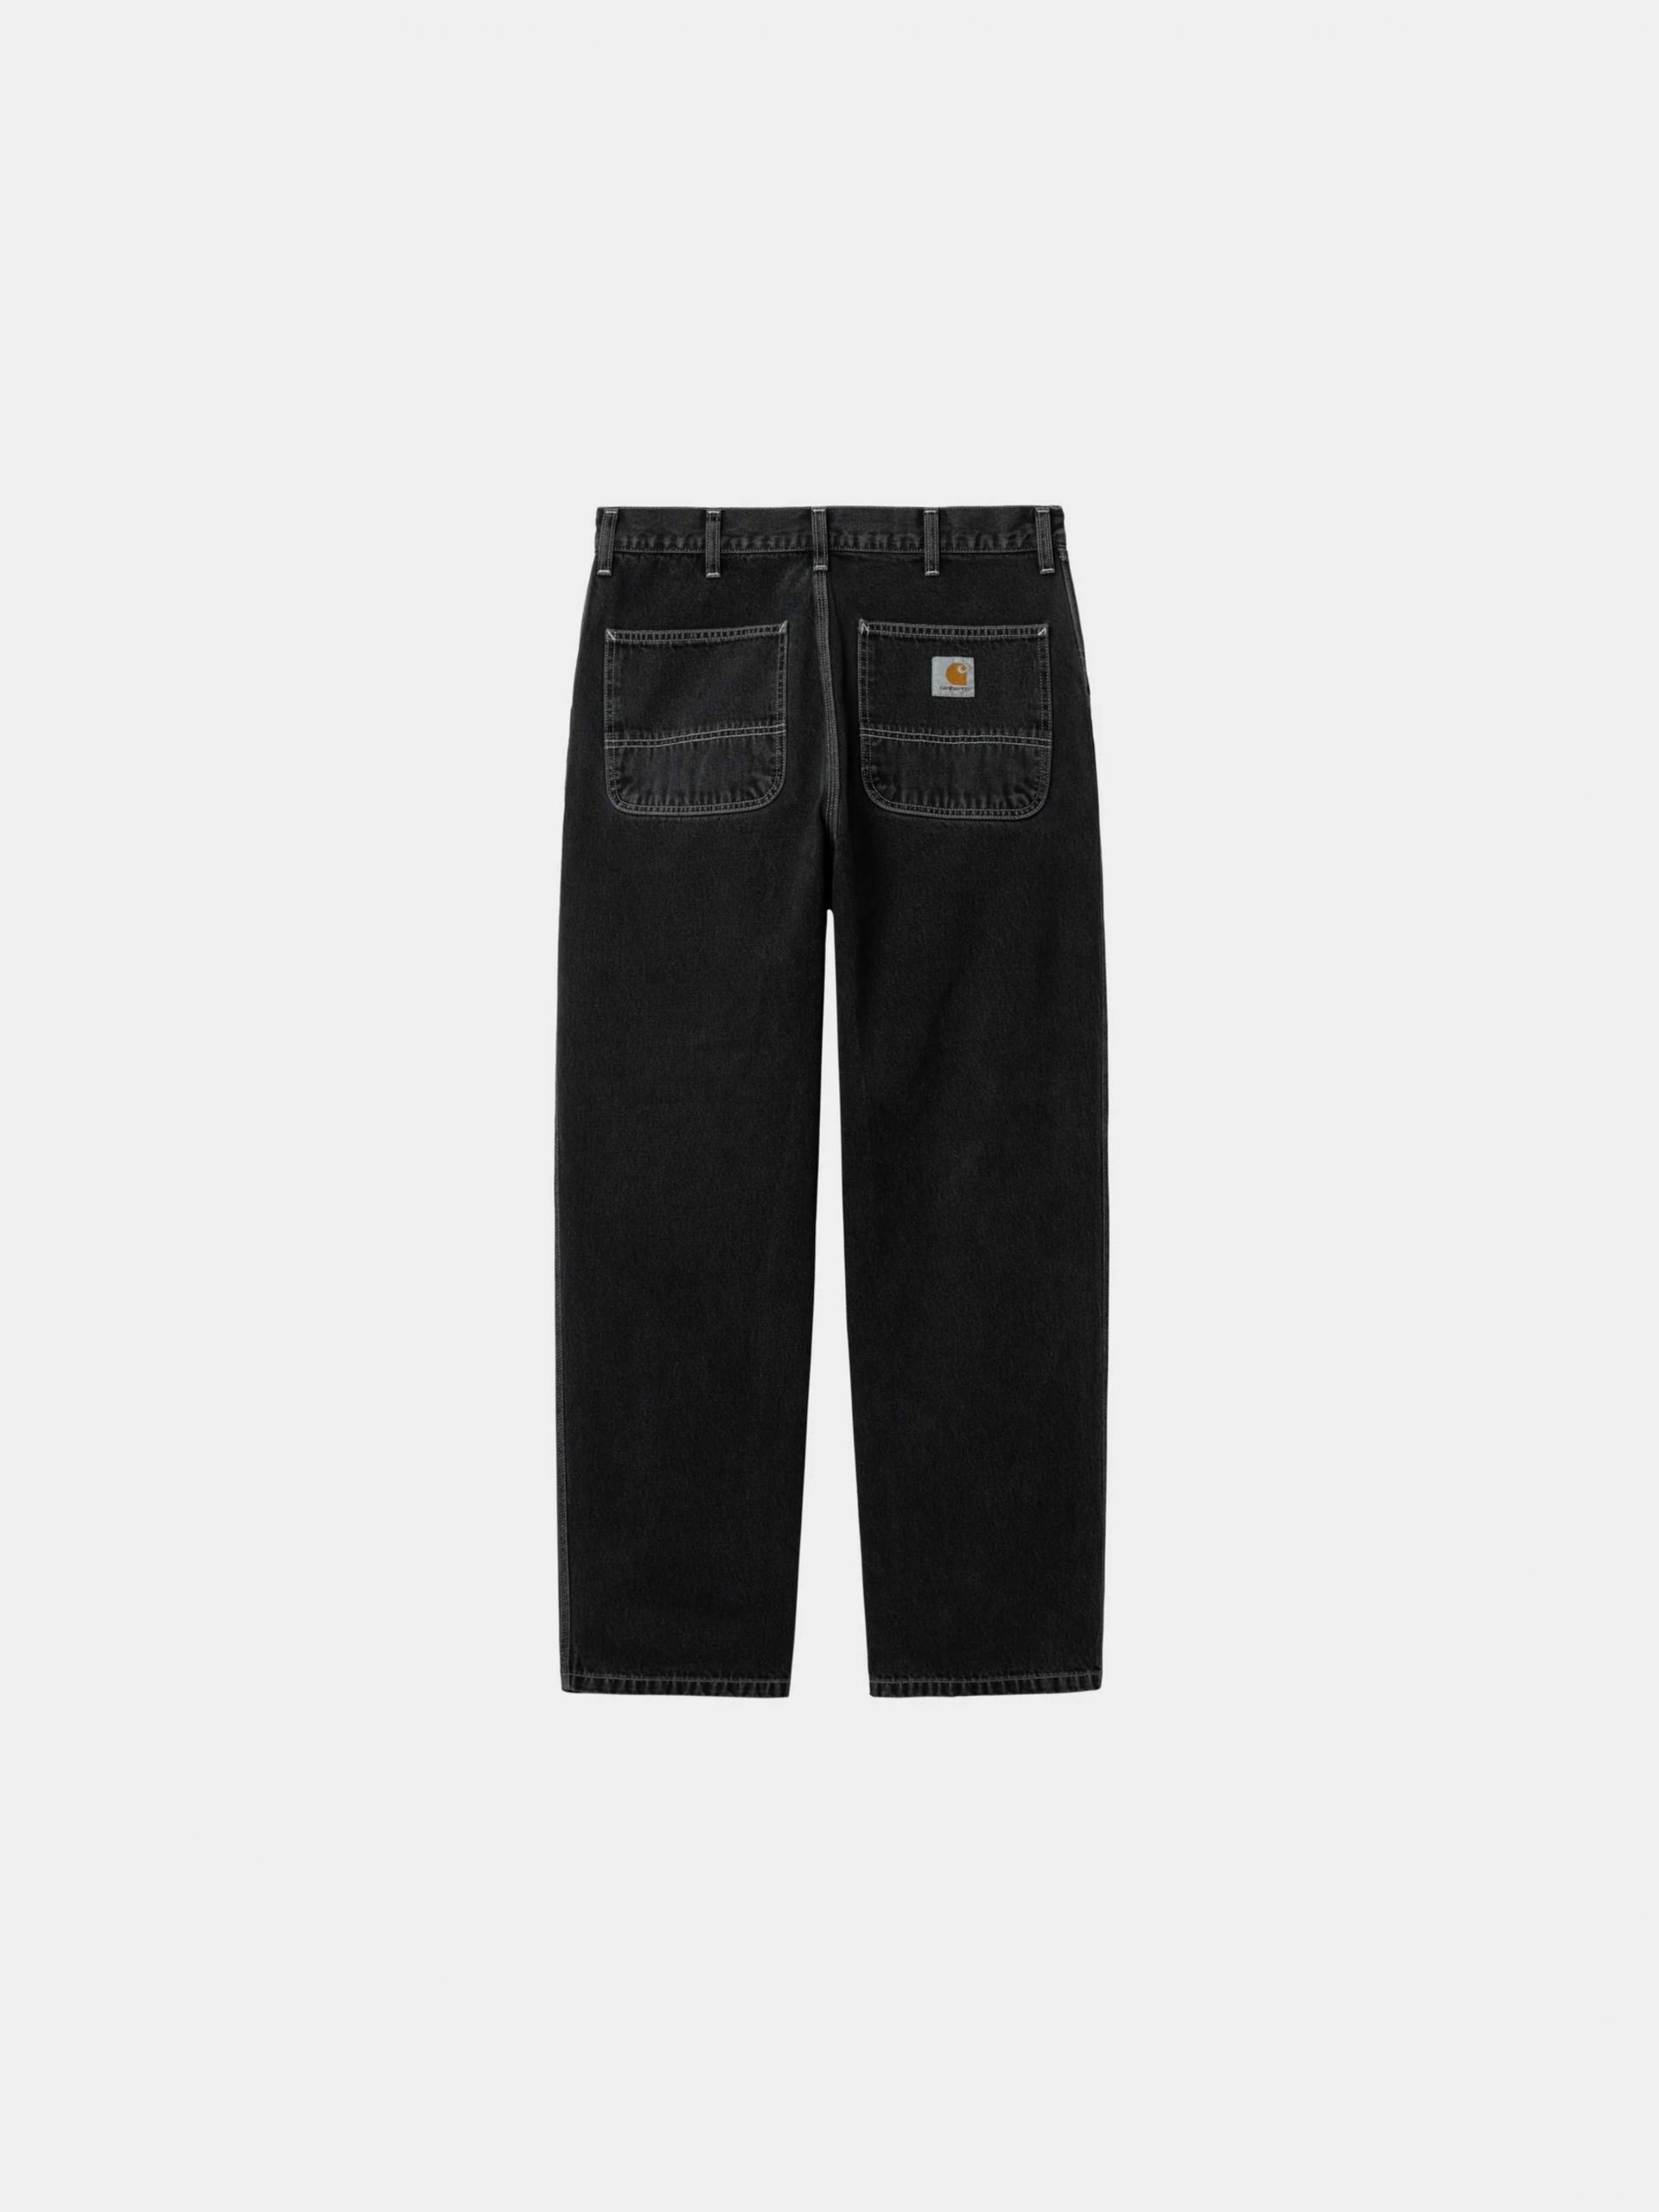 CARHARTT WIP Simple Pants Black – WORMHOLE STORE